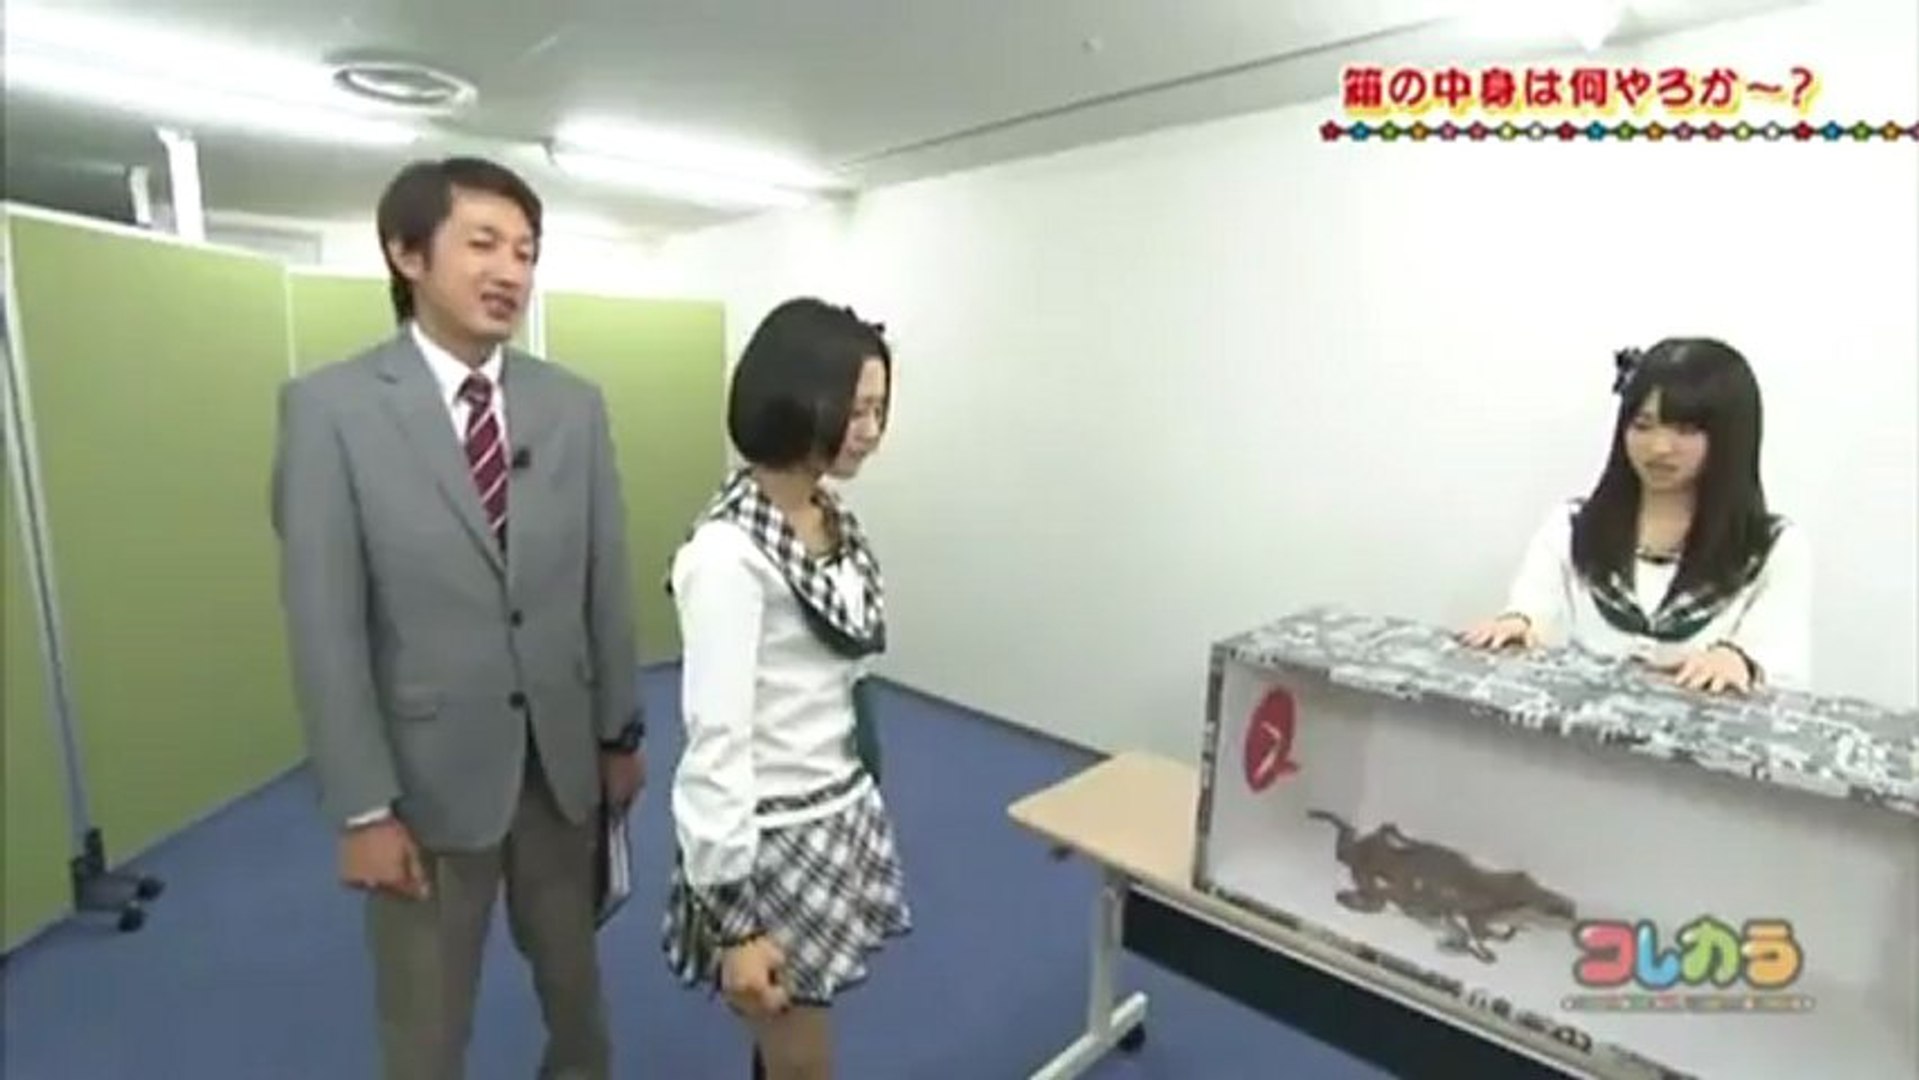 Hkt48の課外授業 箱の中身は何やろか 15 12 06 29 Kodama Haruka Nakanishi Chiyori Video Dailymotion